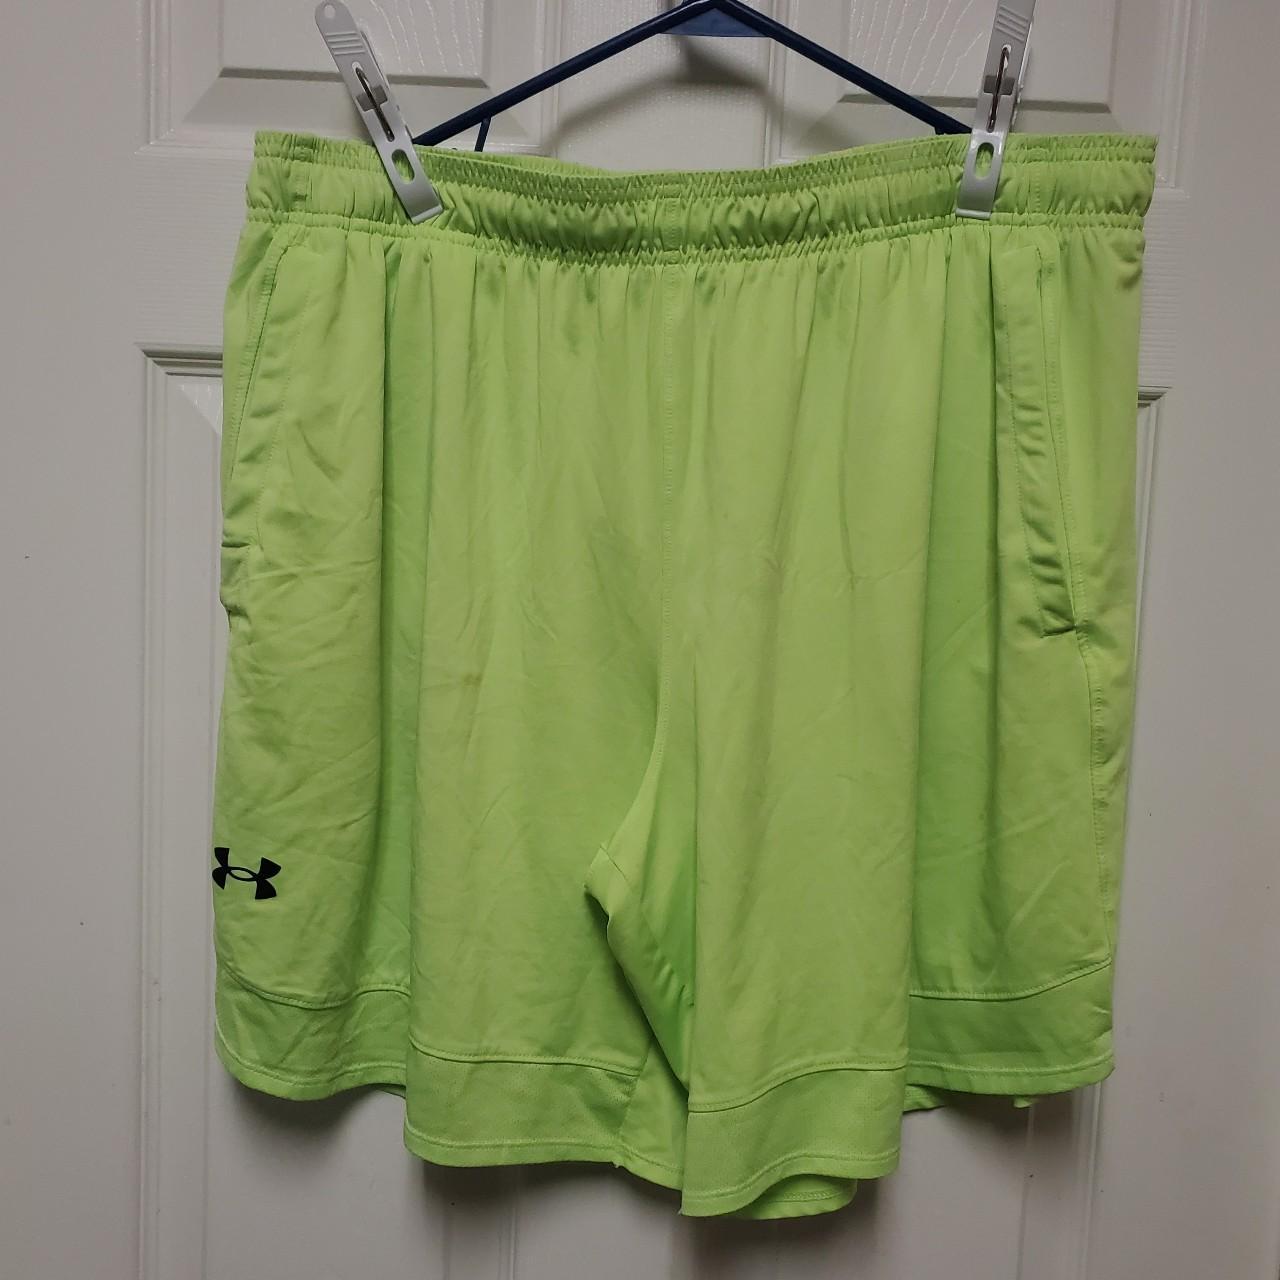 Under Armour Women's Green Shorts | Depop